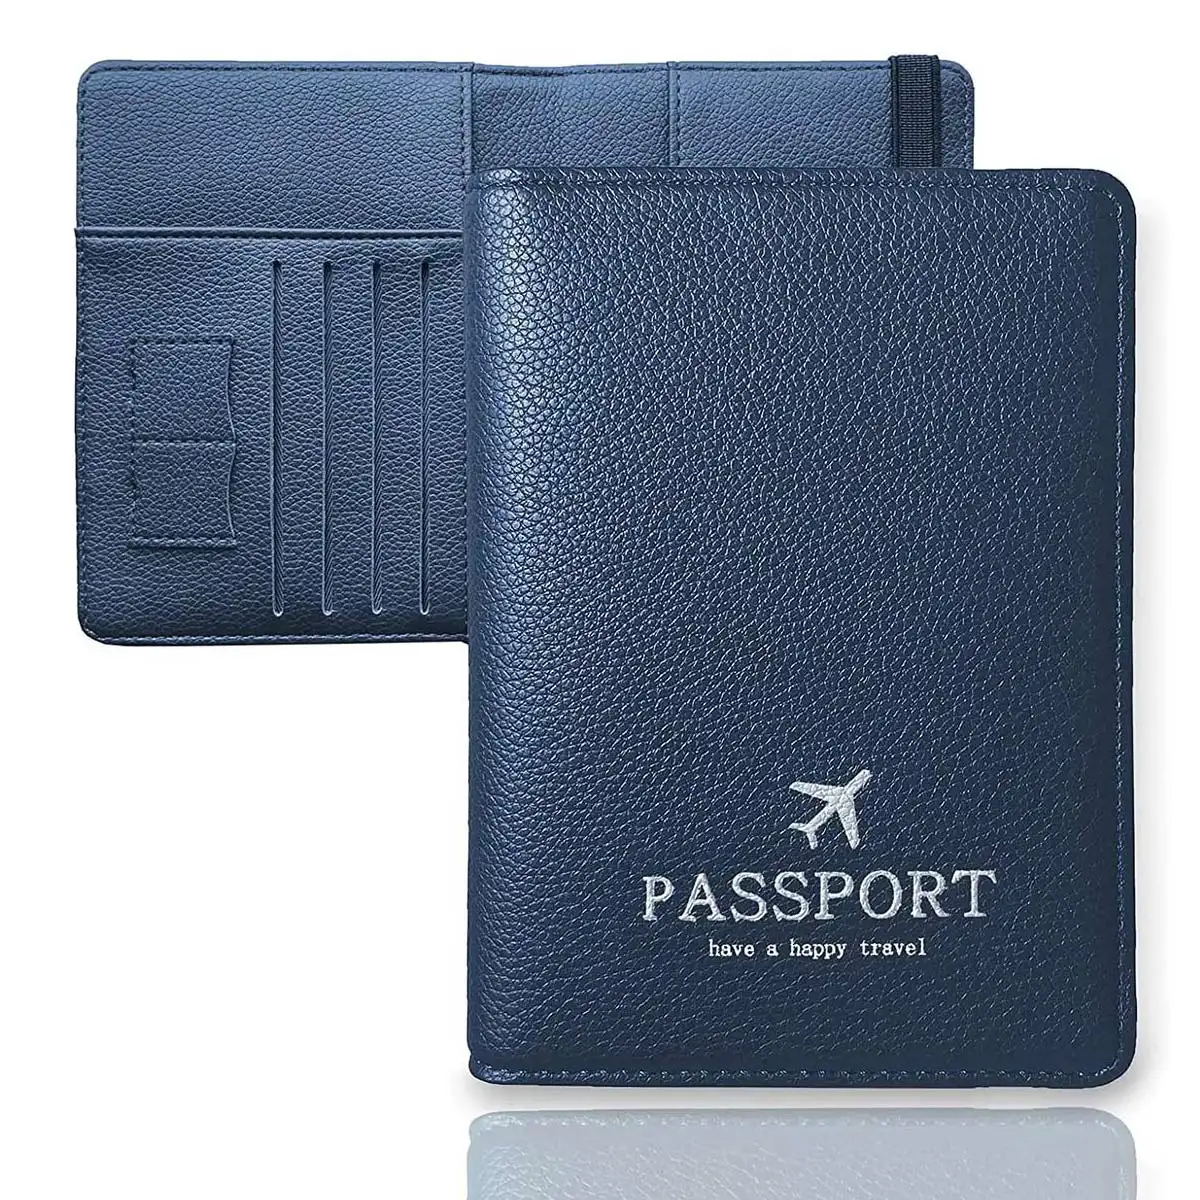 パスポートウォレットトラベルアクセサリーフェイクRFIDブロッキングPUレザー昇華パスポートカバーロゴ付きパスポートホルダー安い